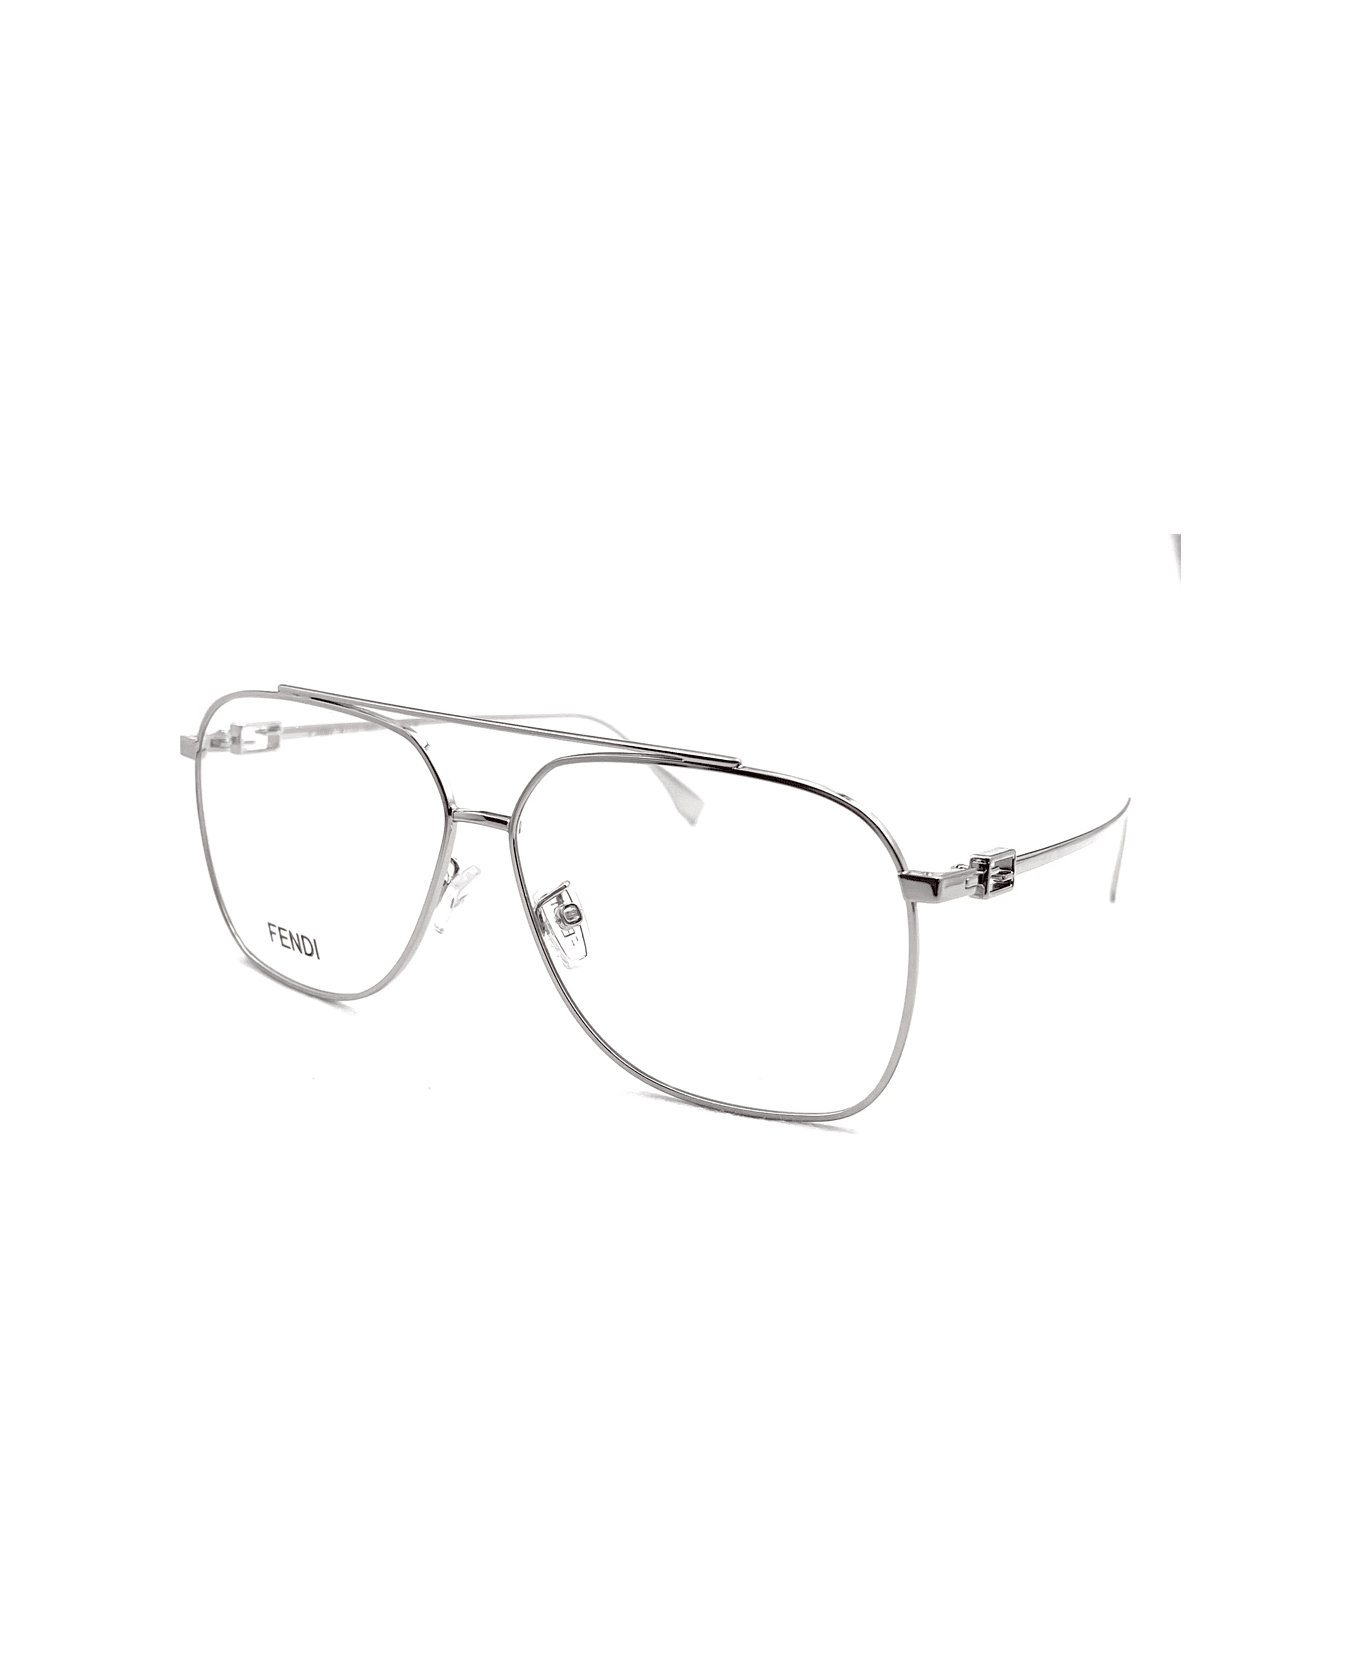 Fendi Eyewear Fe50083u 016 Glasses - Argento